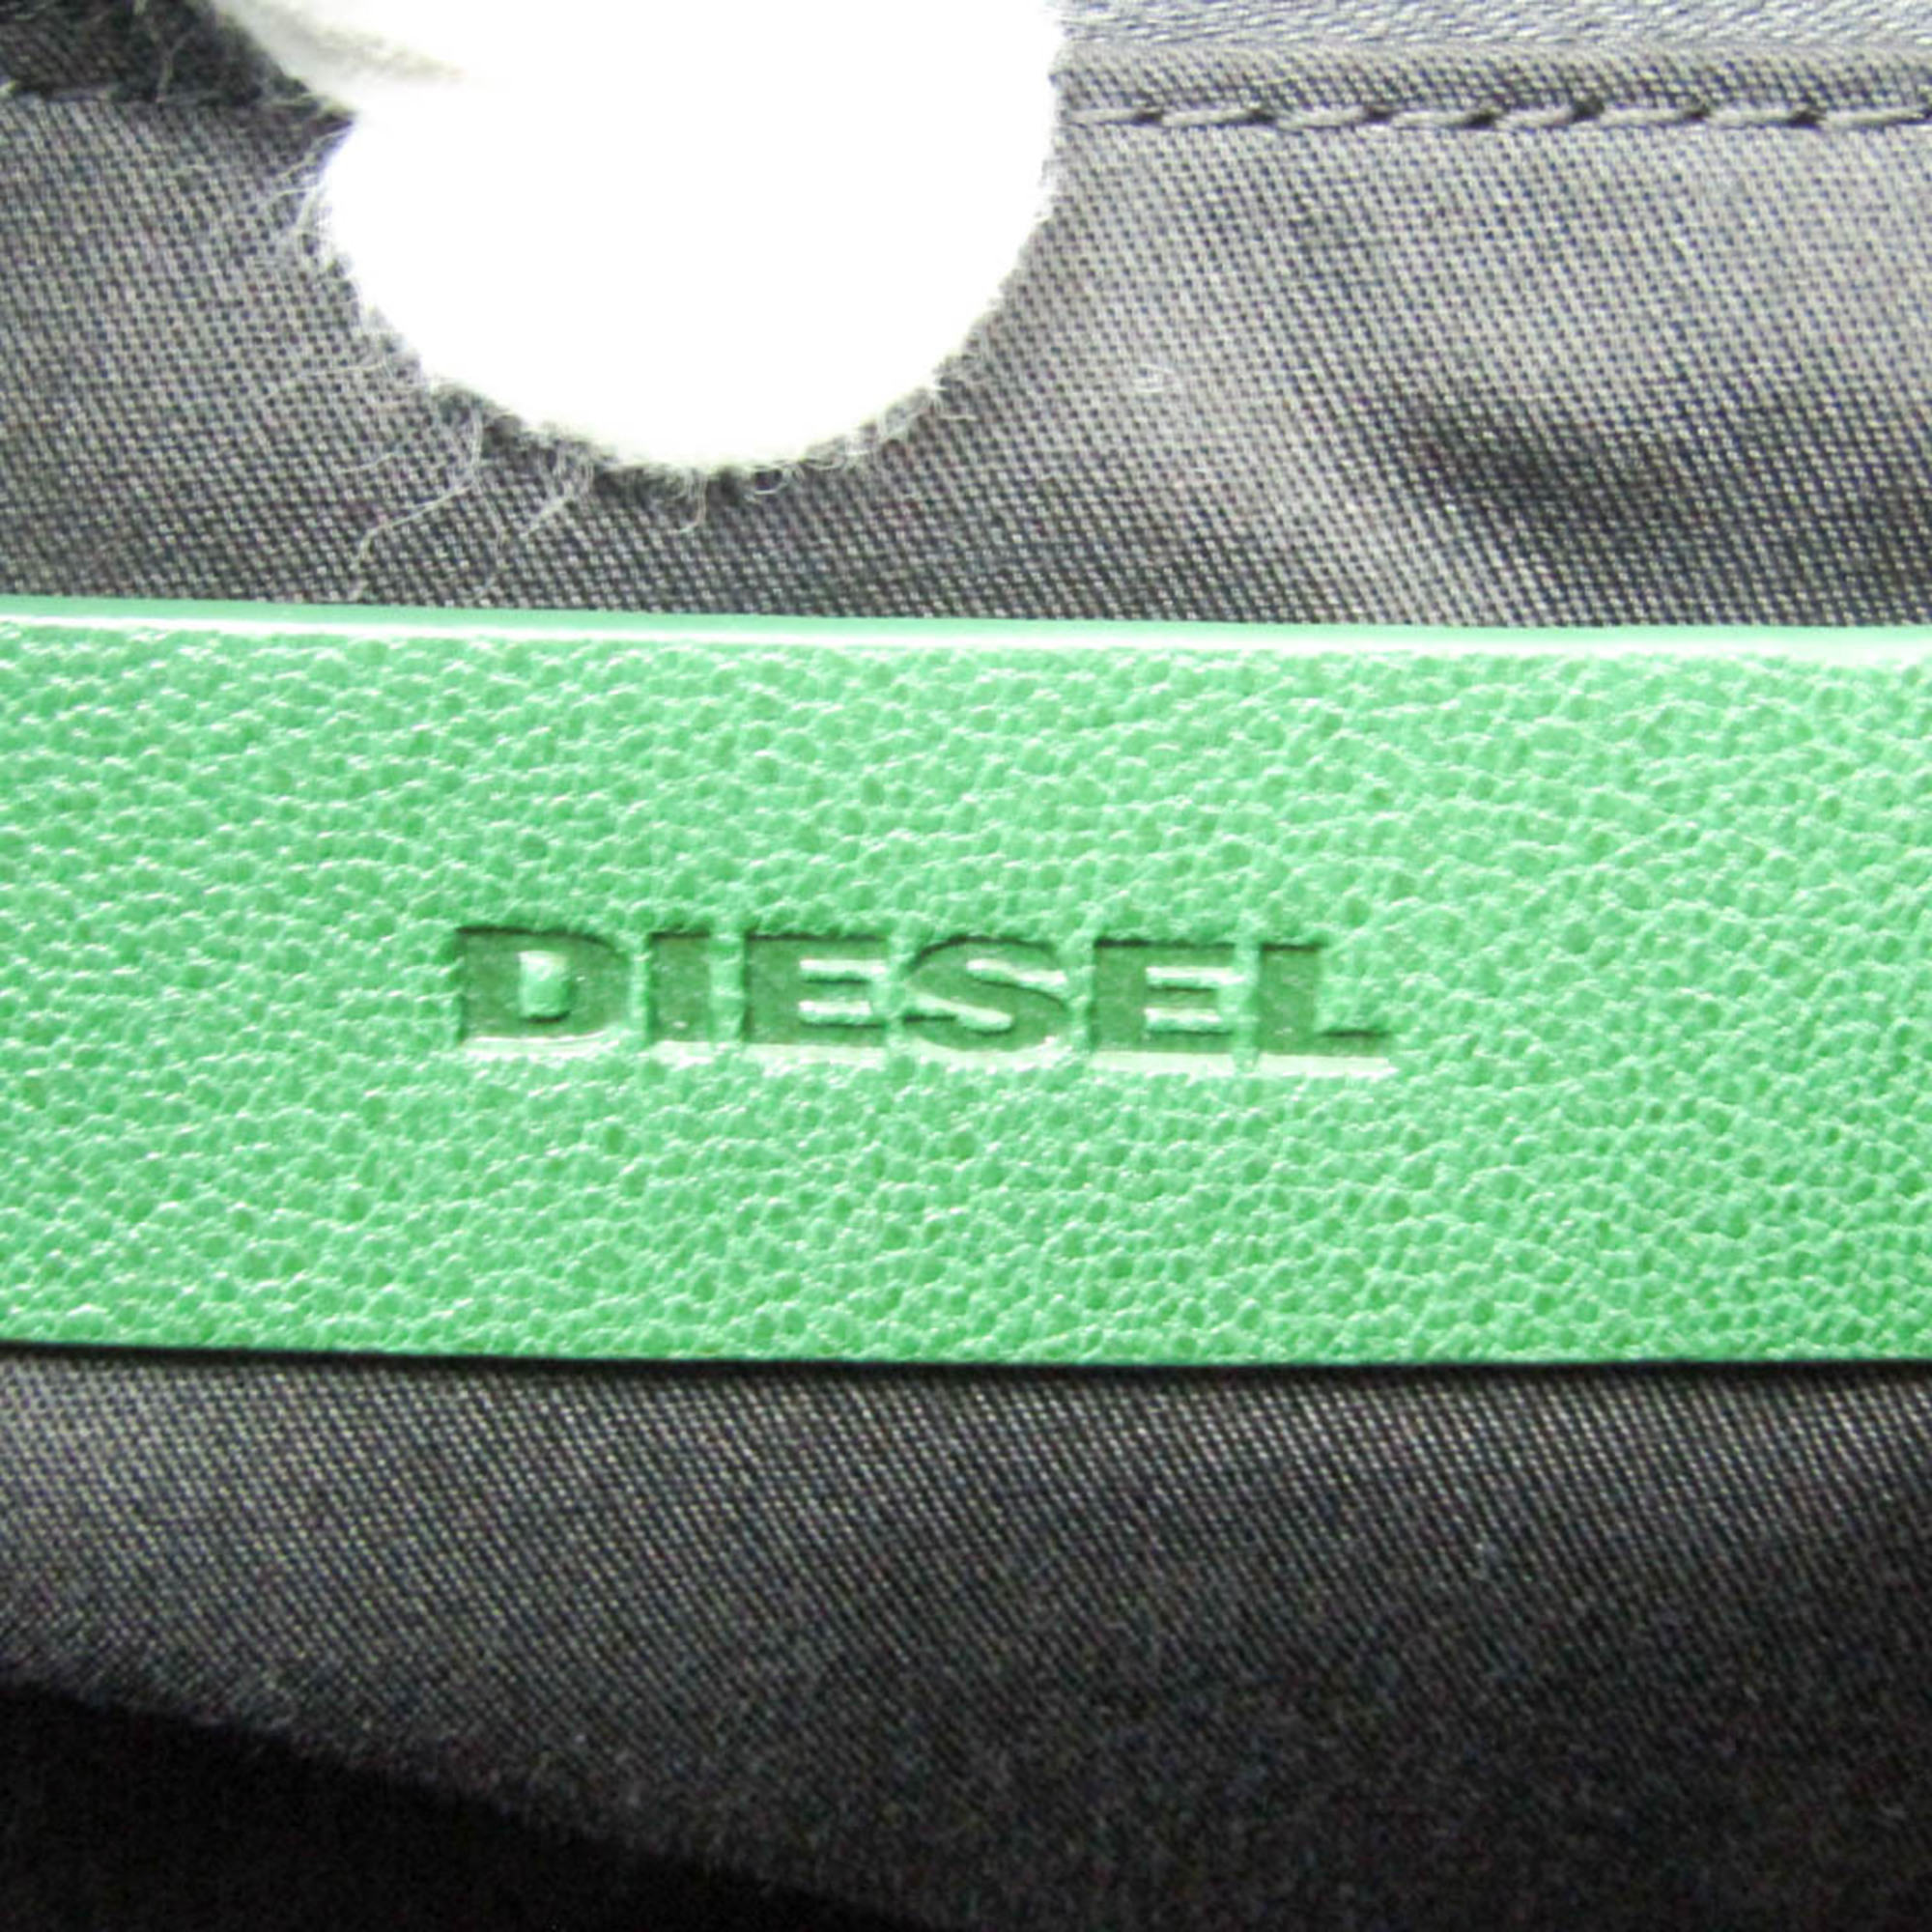 ディーゼル(Diesel) X07145 レディース,メンズ レザー ハンドバッグ,トートバッグ グリーン